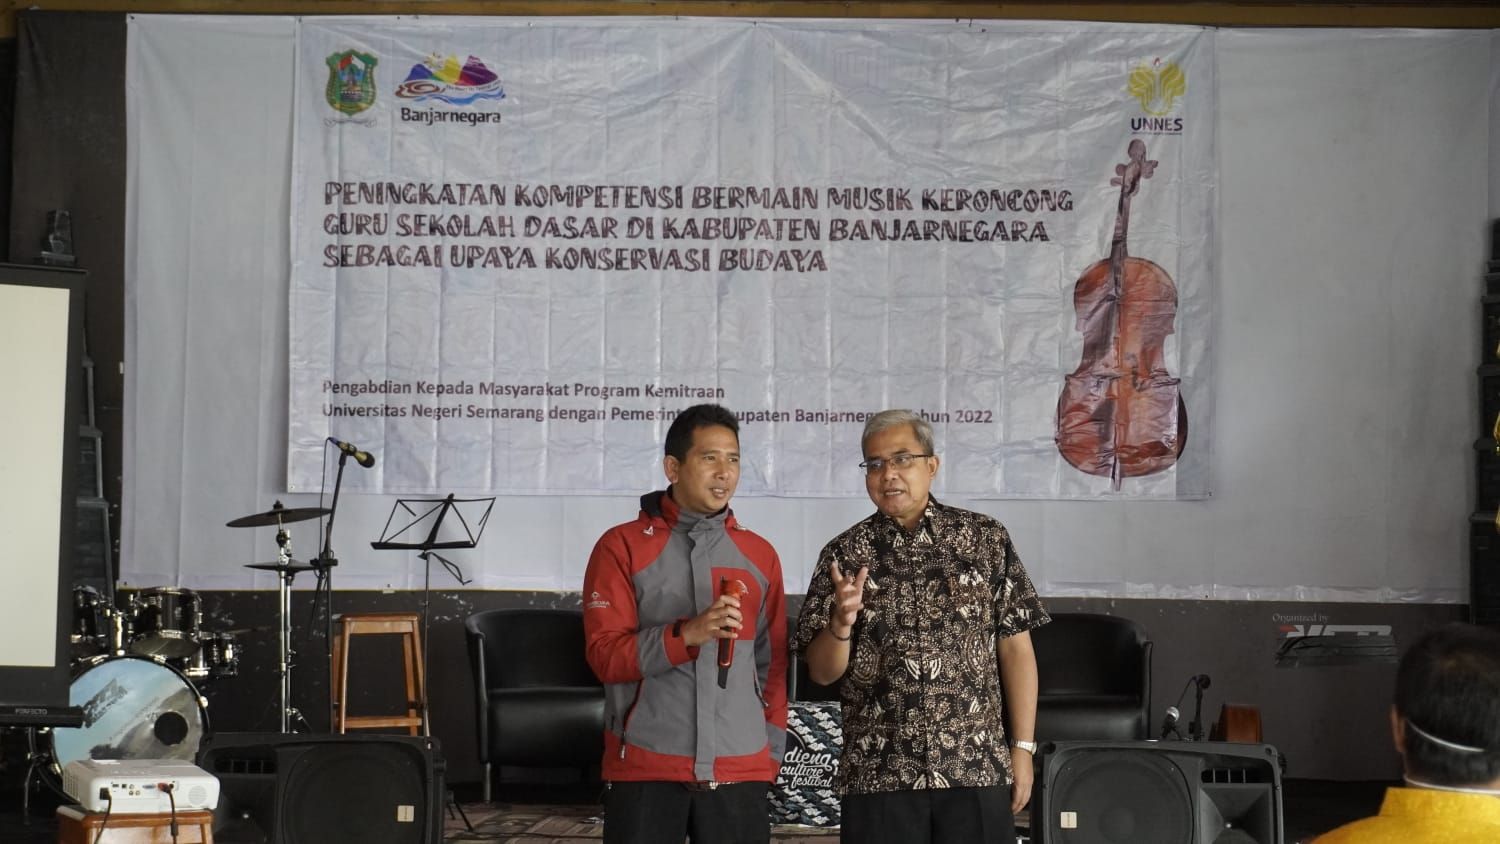 Main Musik Keroncong, Pemkab Banjarnegara Gandeng Universitas Negeri Semarang 'Unnes', Guru SD Jadi Target Pelatihan